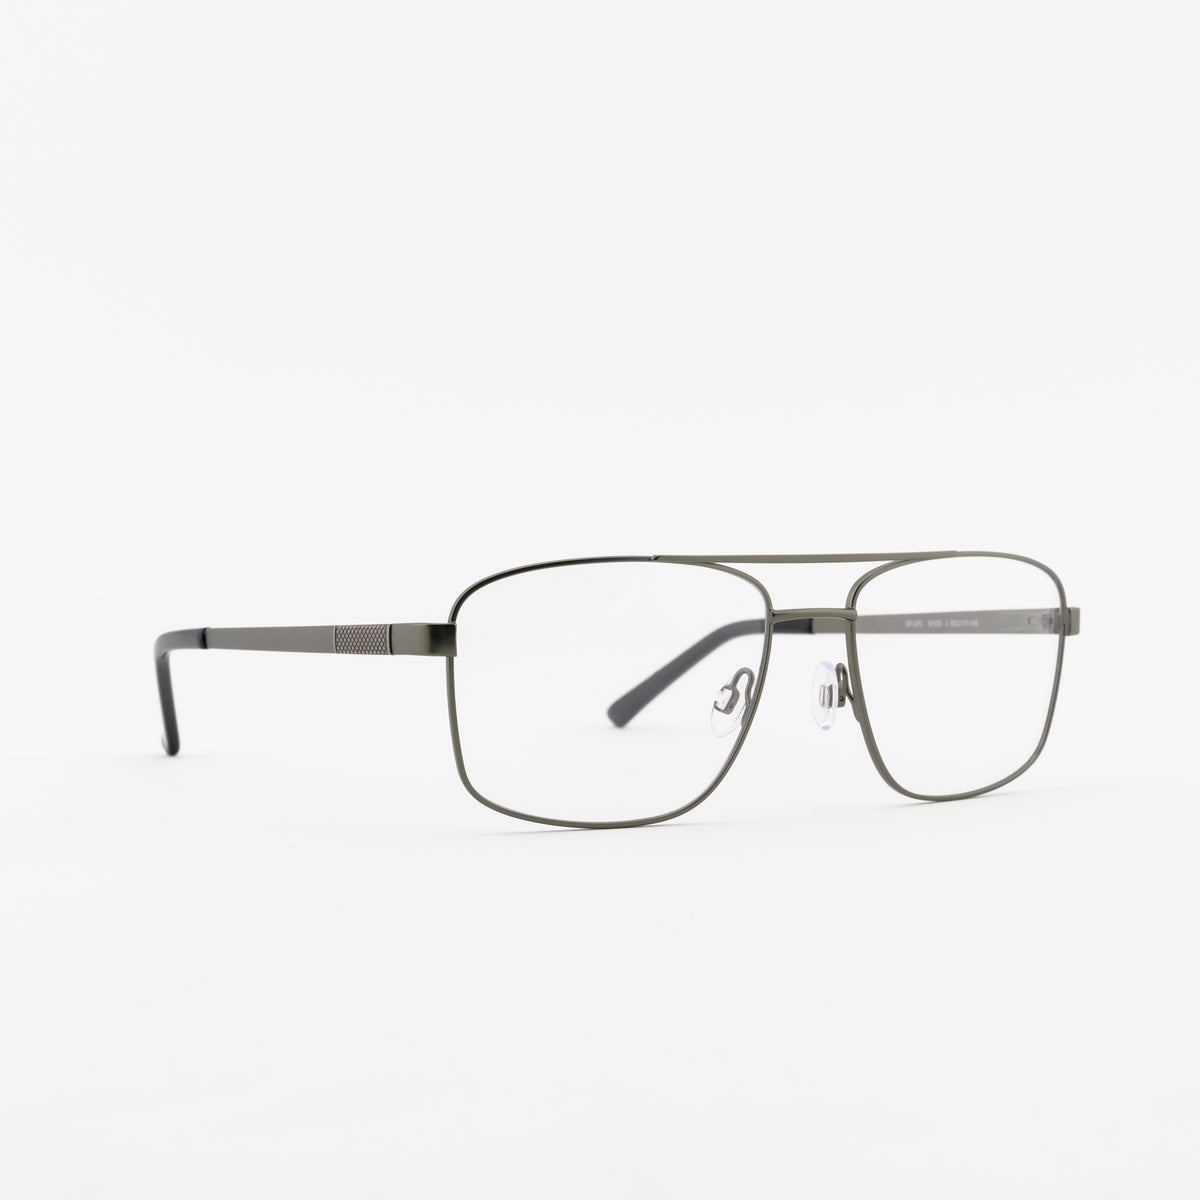 Superflex Superflex SF-570 Eyeglasses